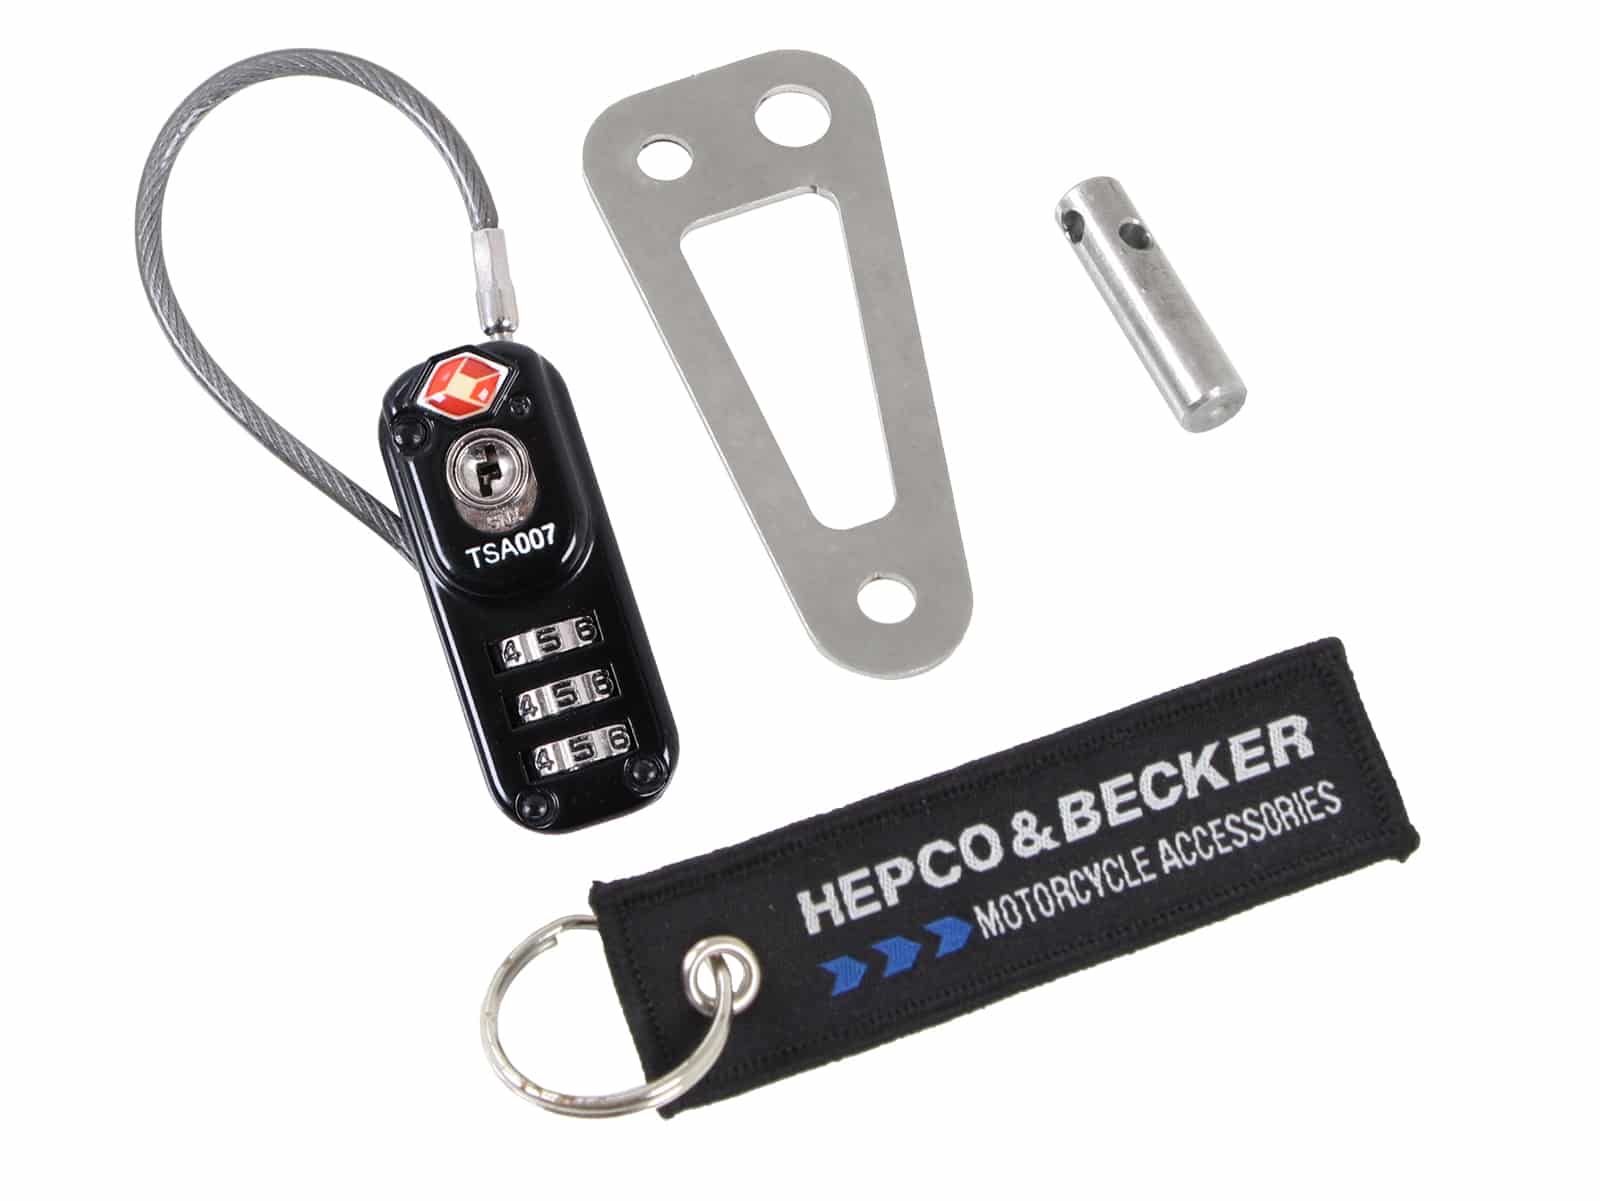 Diebstahlsicherung für Hepco&Becker Lock-it Tankrucksäcke und Hecktaschen